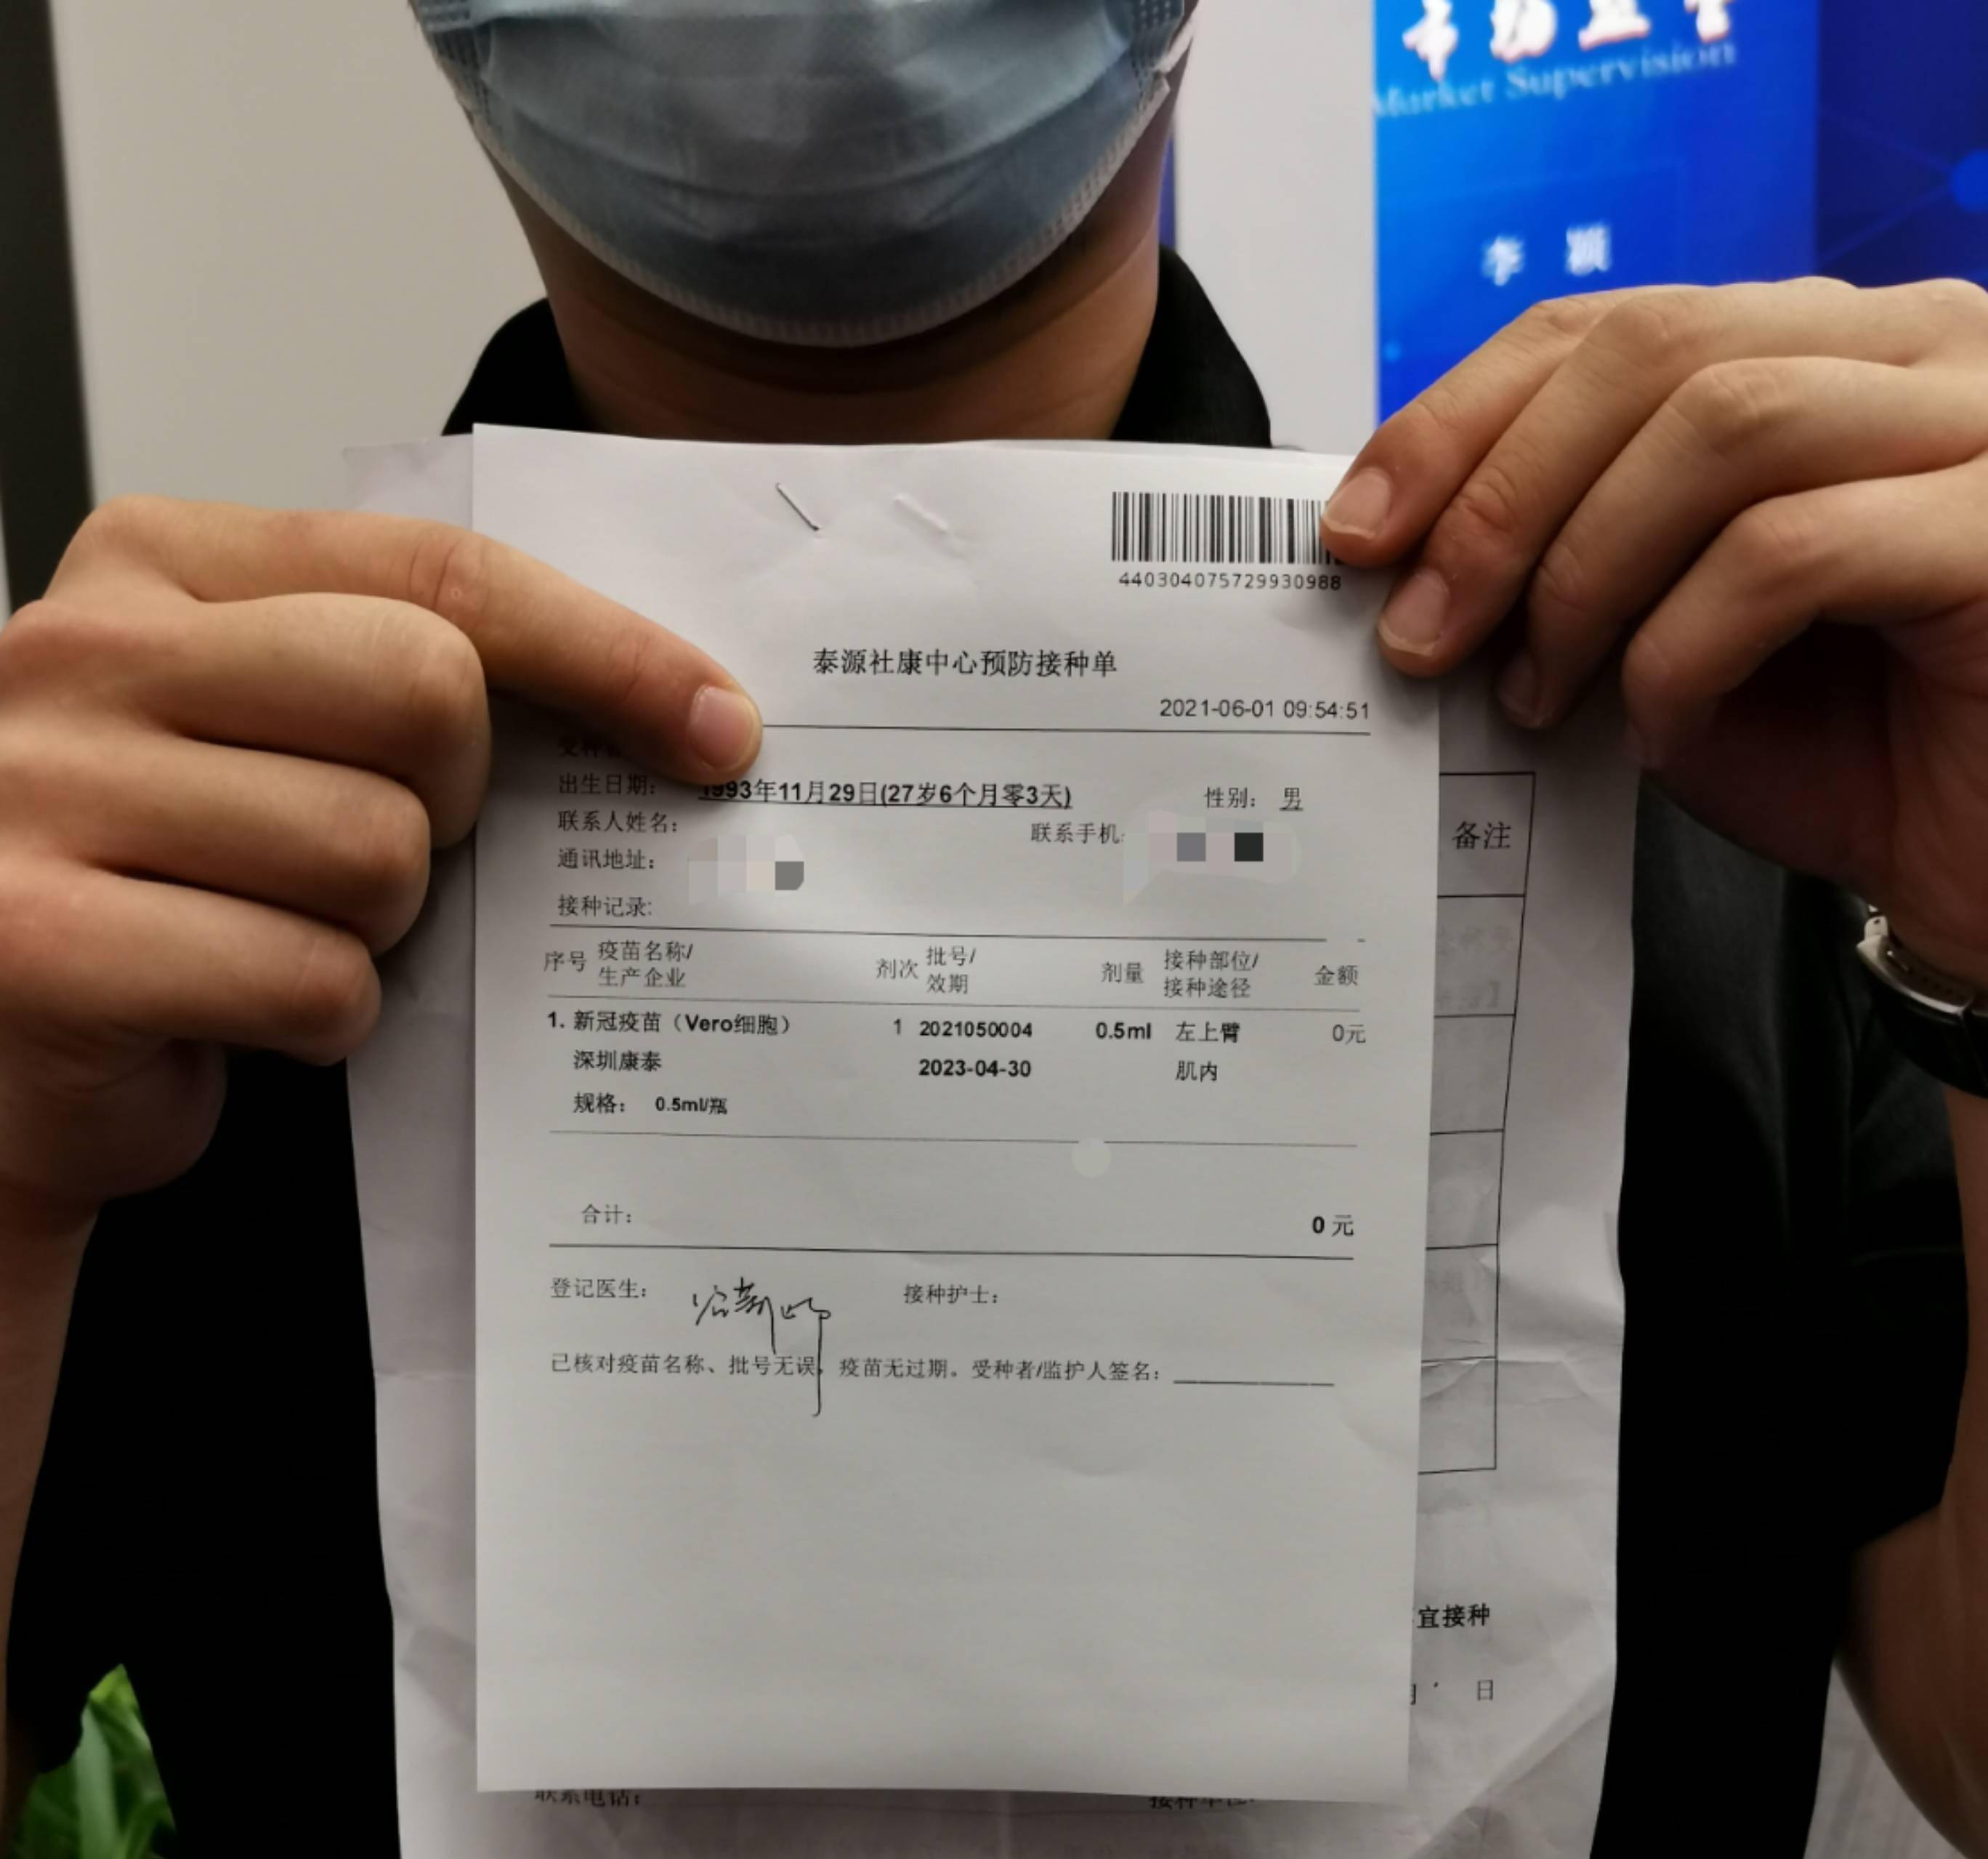 视频 上新了 深圳产新冠疫苗今日开打,前期重点保证广东地区供应